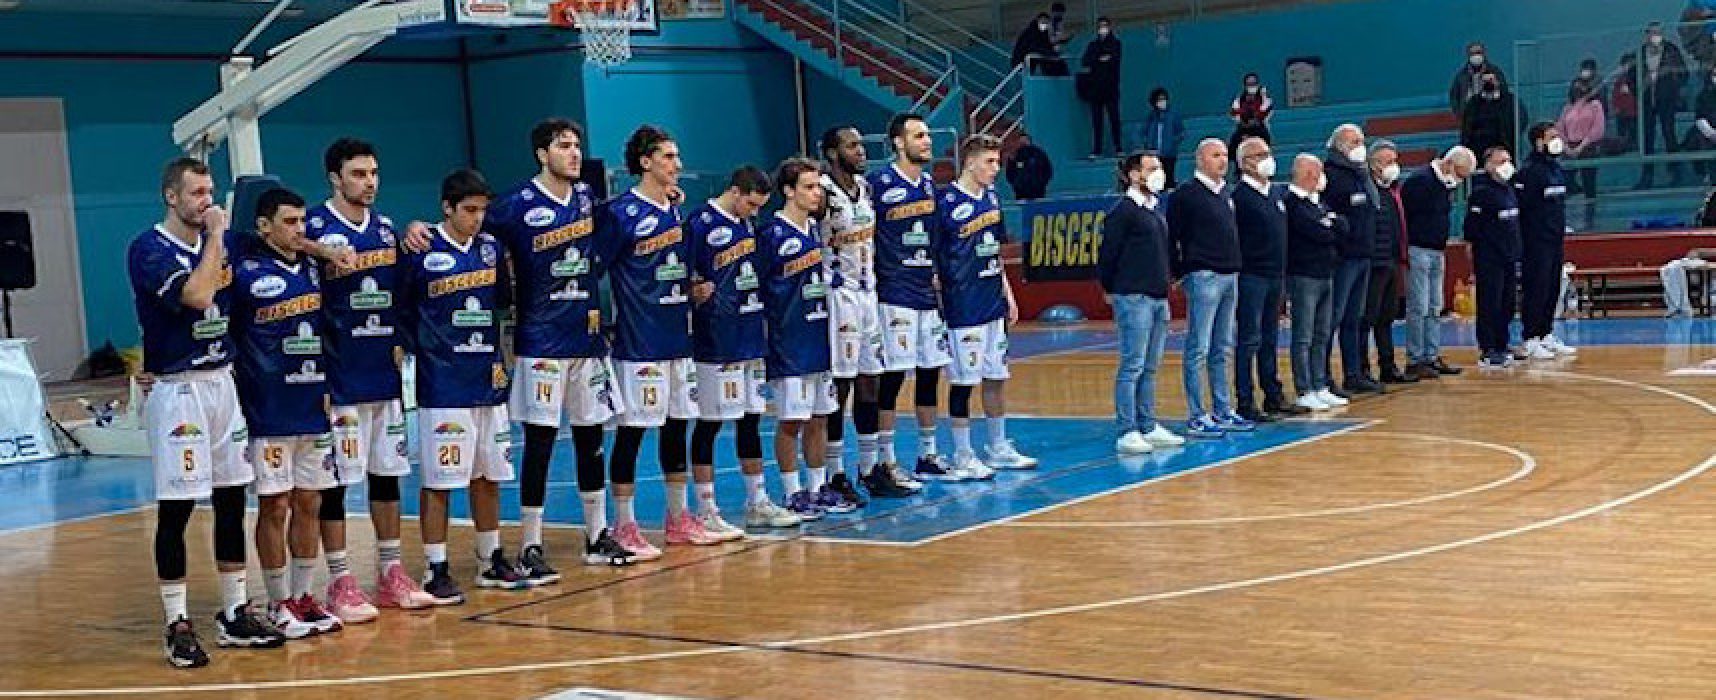 Basket, i Lions battono Pozzuoli e centrano la Final Eight di Coppa Italia / CLASSIFICA